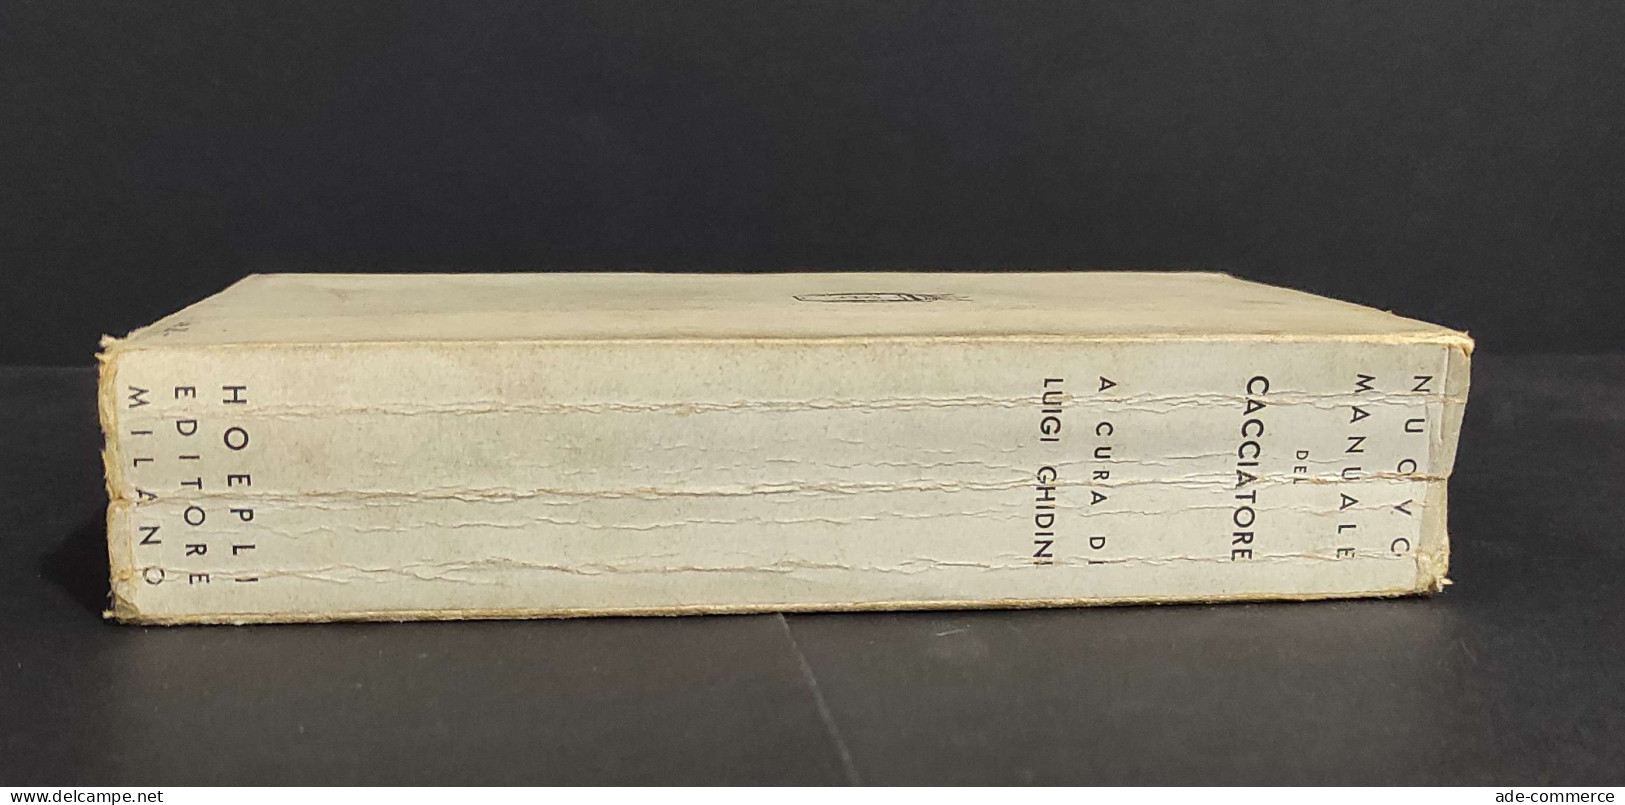 Nuovo Manuale Del Cacciatore - L. Ghidini - Ed. Hoepli - 1940                                                            - Chasse Et Pêche